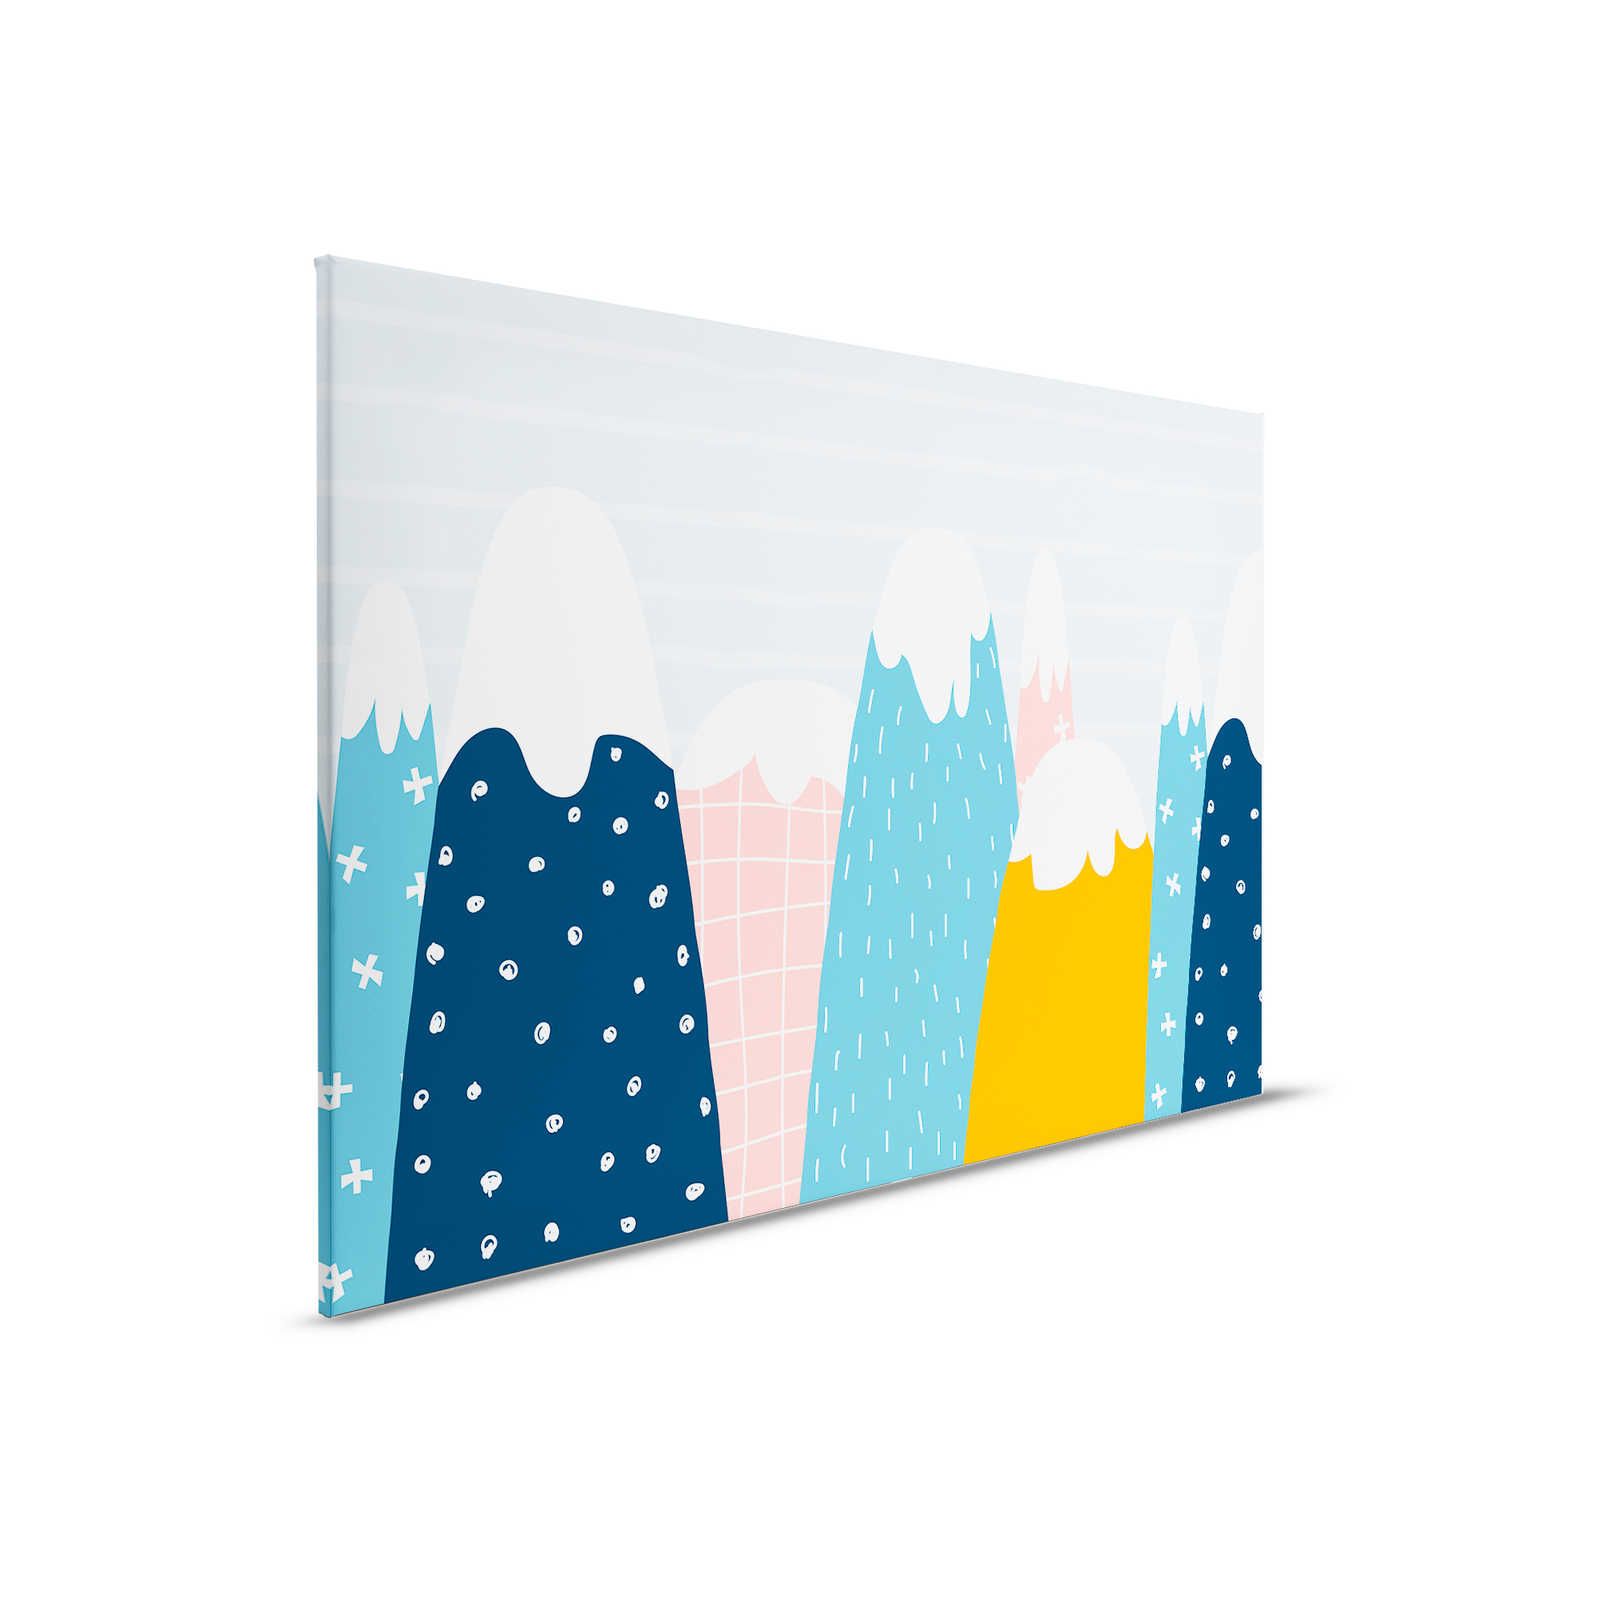 Canvas met besneeuwde heuvels in geschilderde stijl - 90 cm x 60 cm
